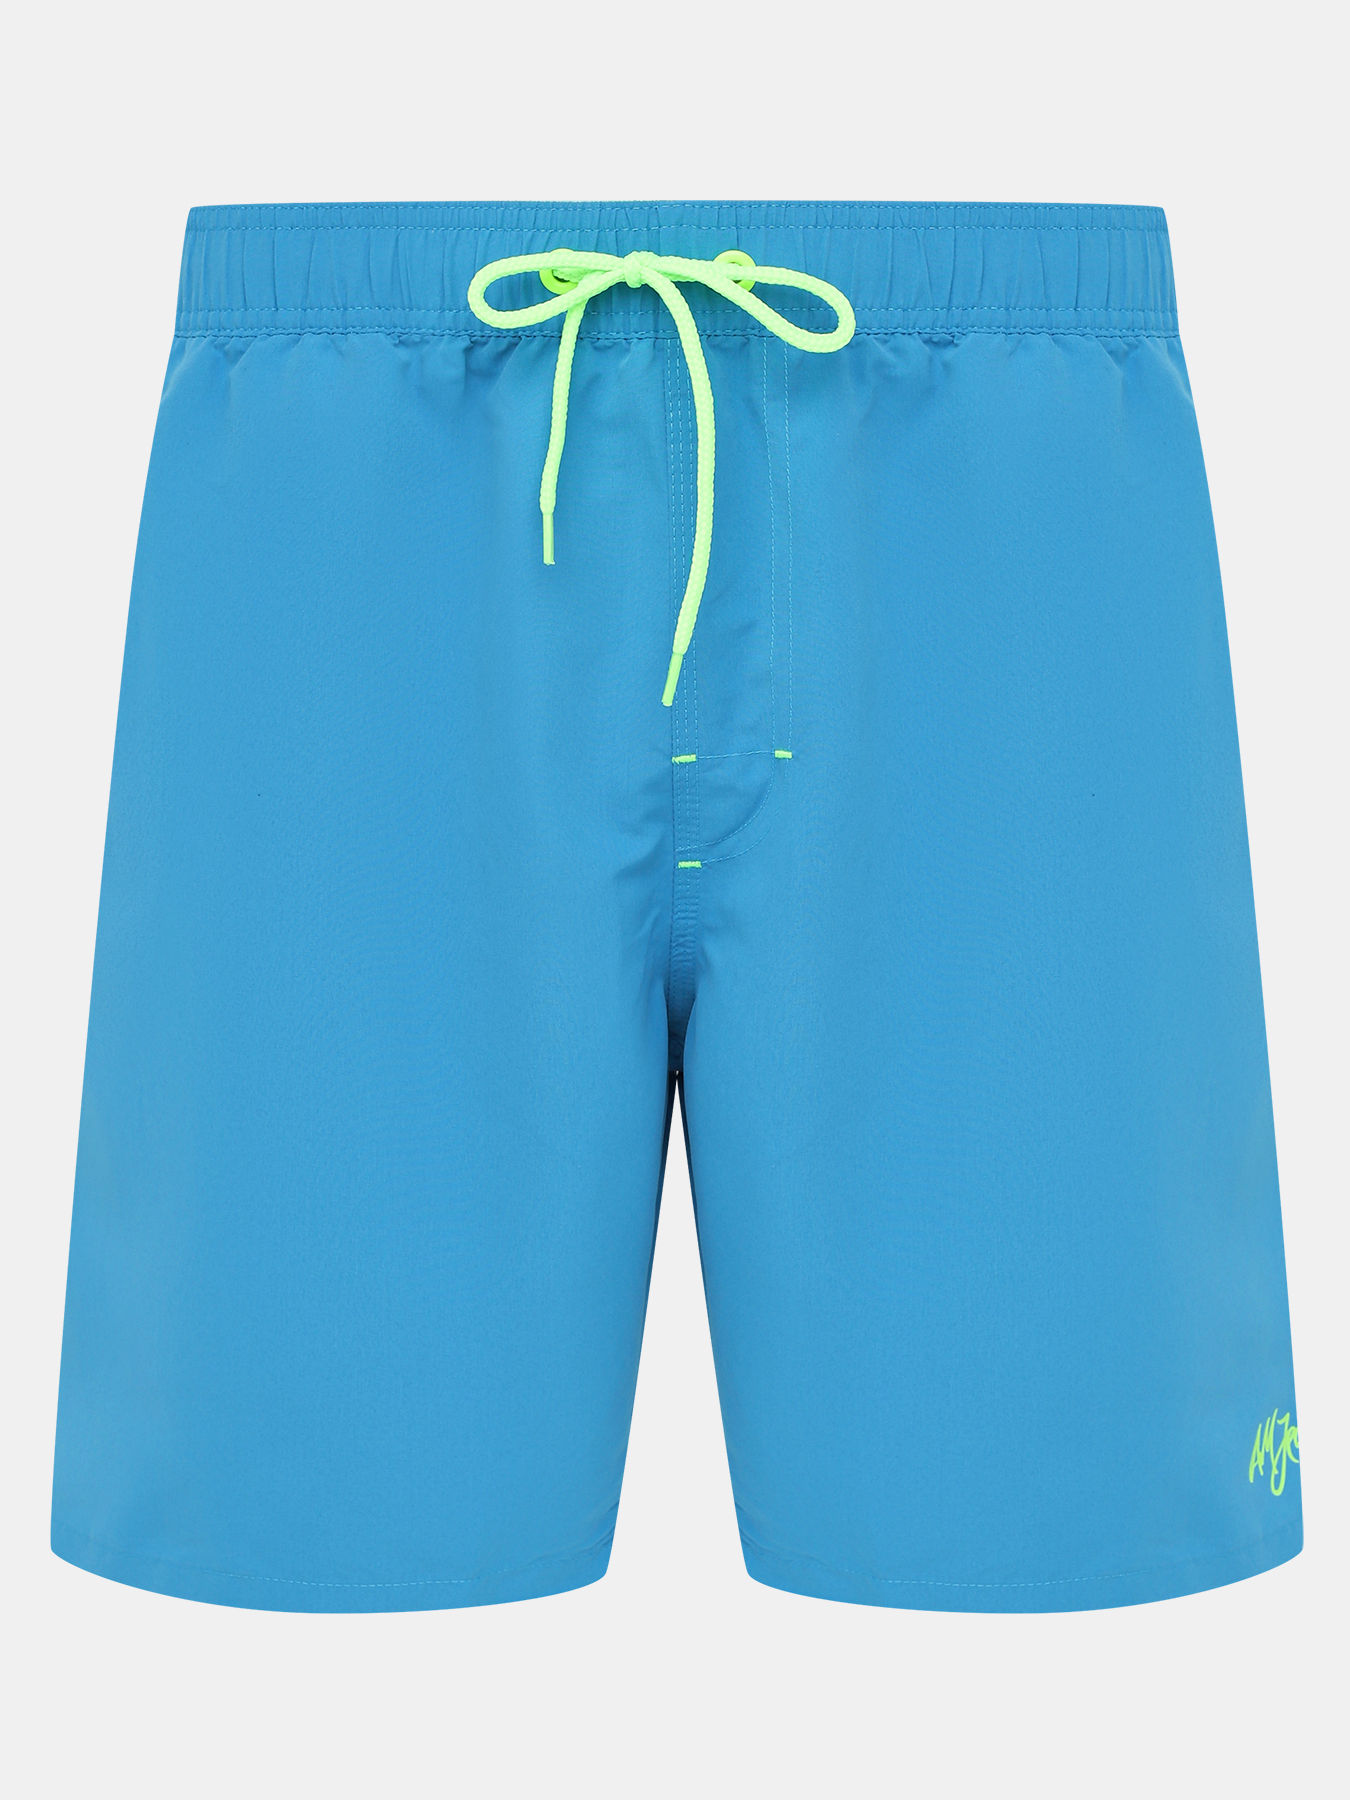 Шорты плавательные Alessandro Manzoni Jeans 395802-025, цвет голубой, размер 48